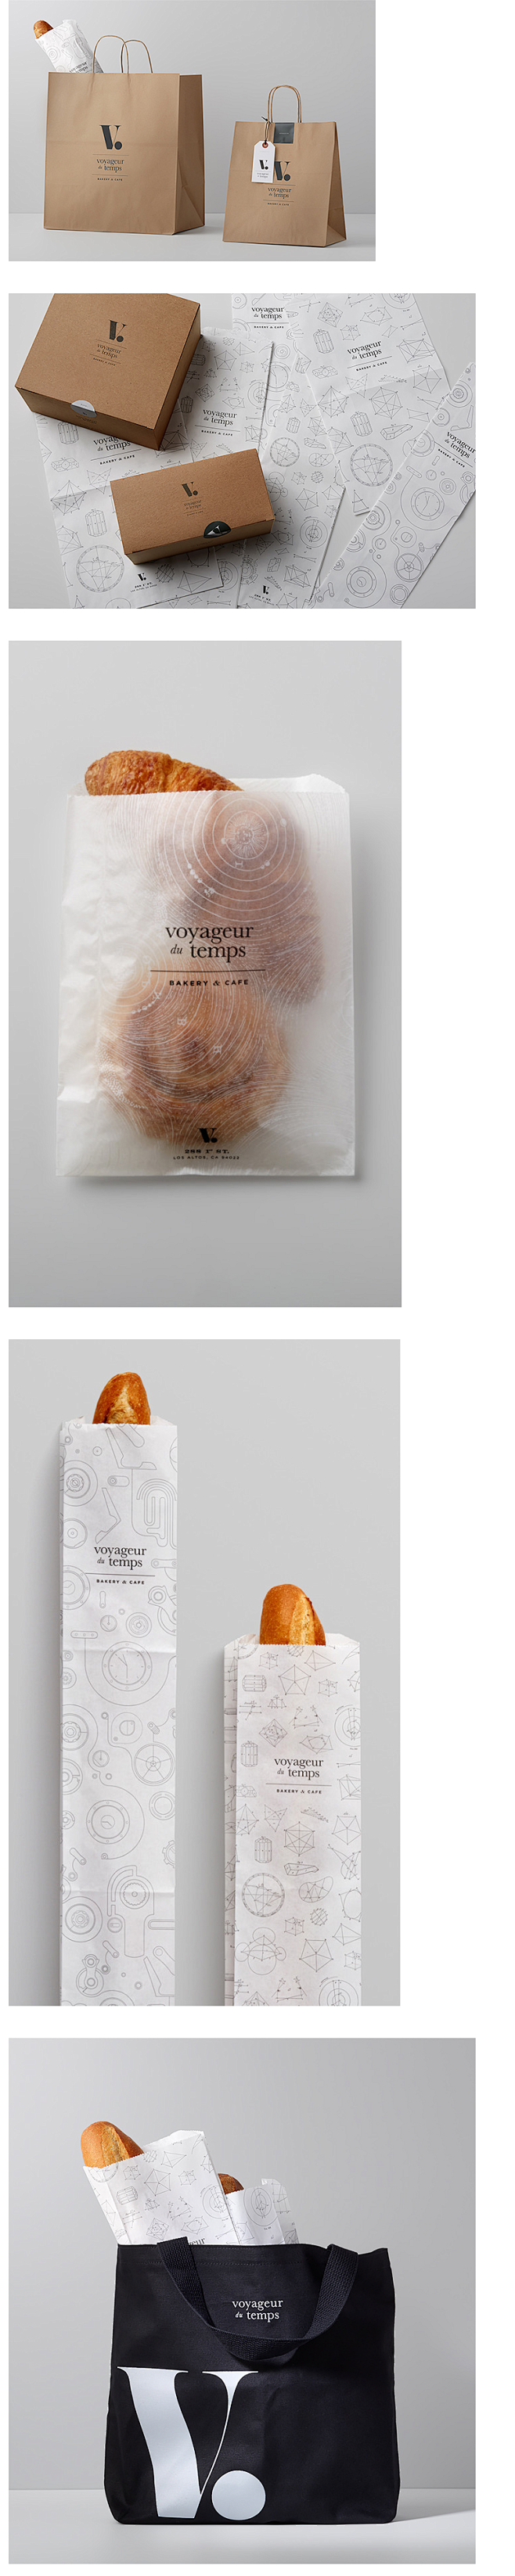 咖啡和面包店视觉形象设计 面包VI 面包...